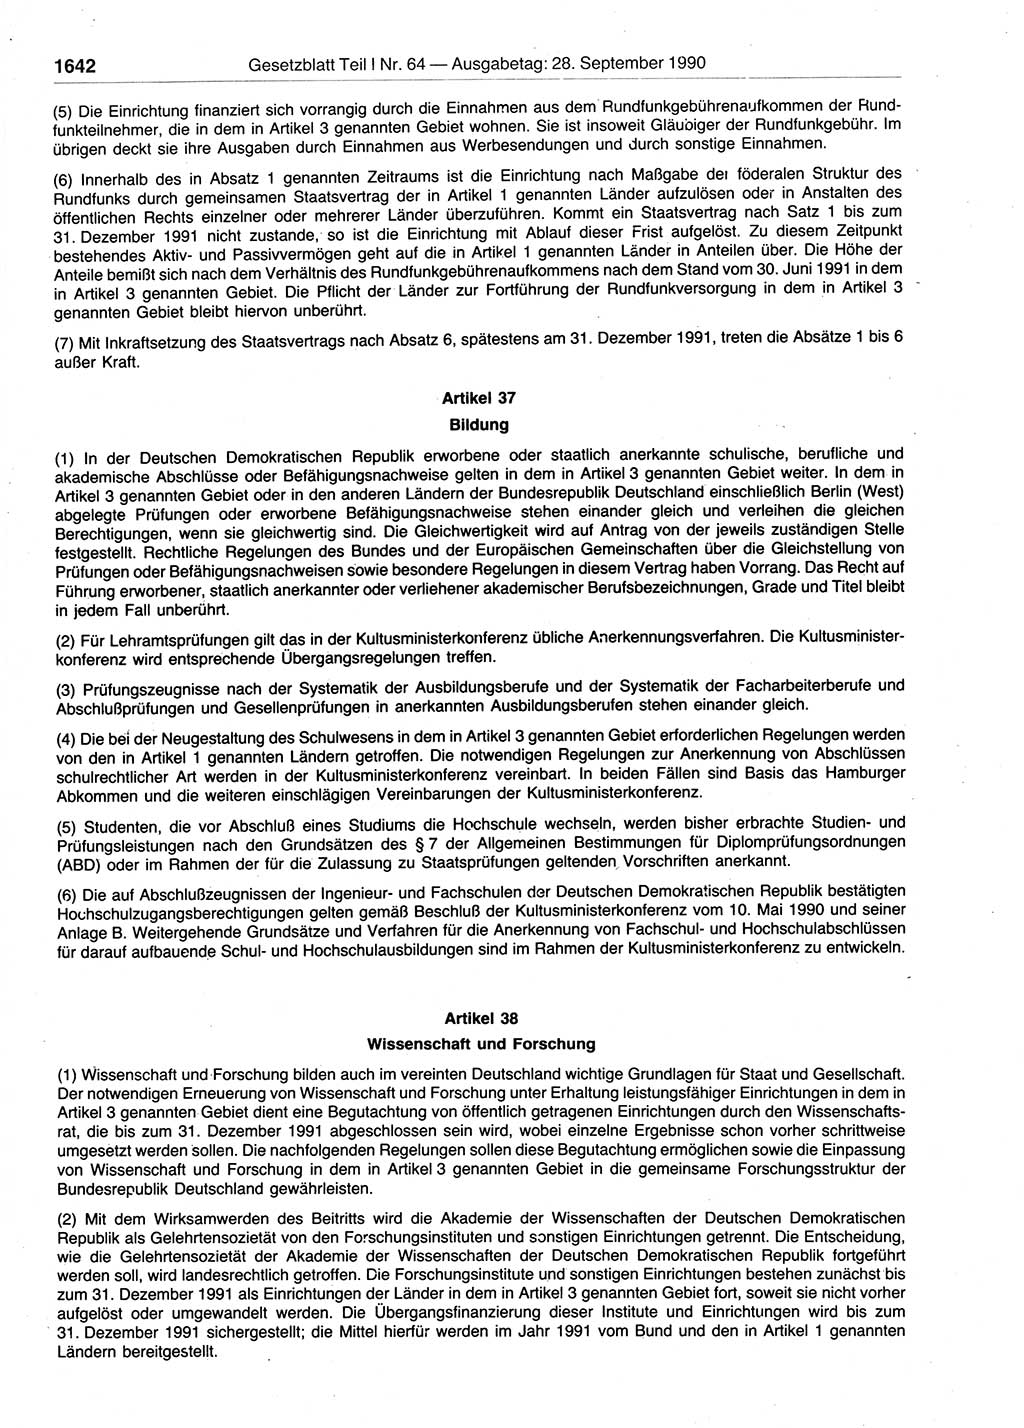 Gesetzblatt (GBl.) der Deutschen Demokratischen Republik (DDR) Teil Ⅰ 1990, Seite 1642 (GBl. DDR Ⅰ 1990, S. 1642)